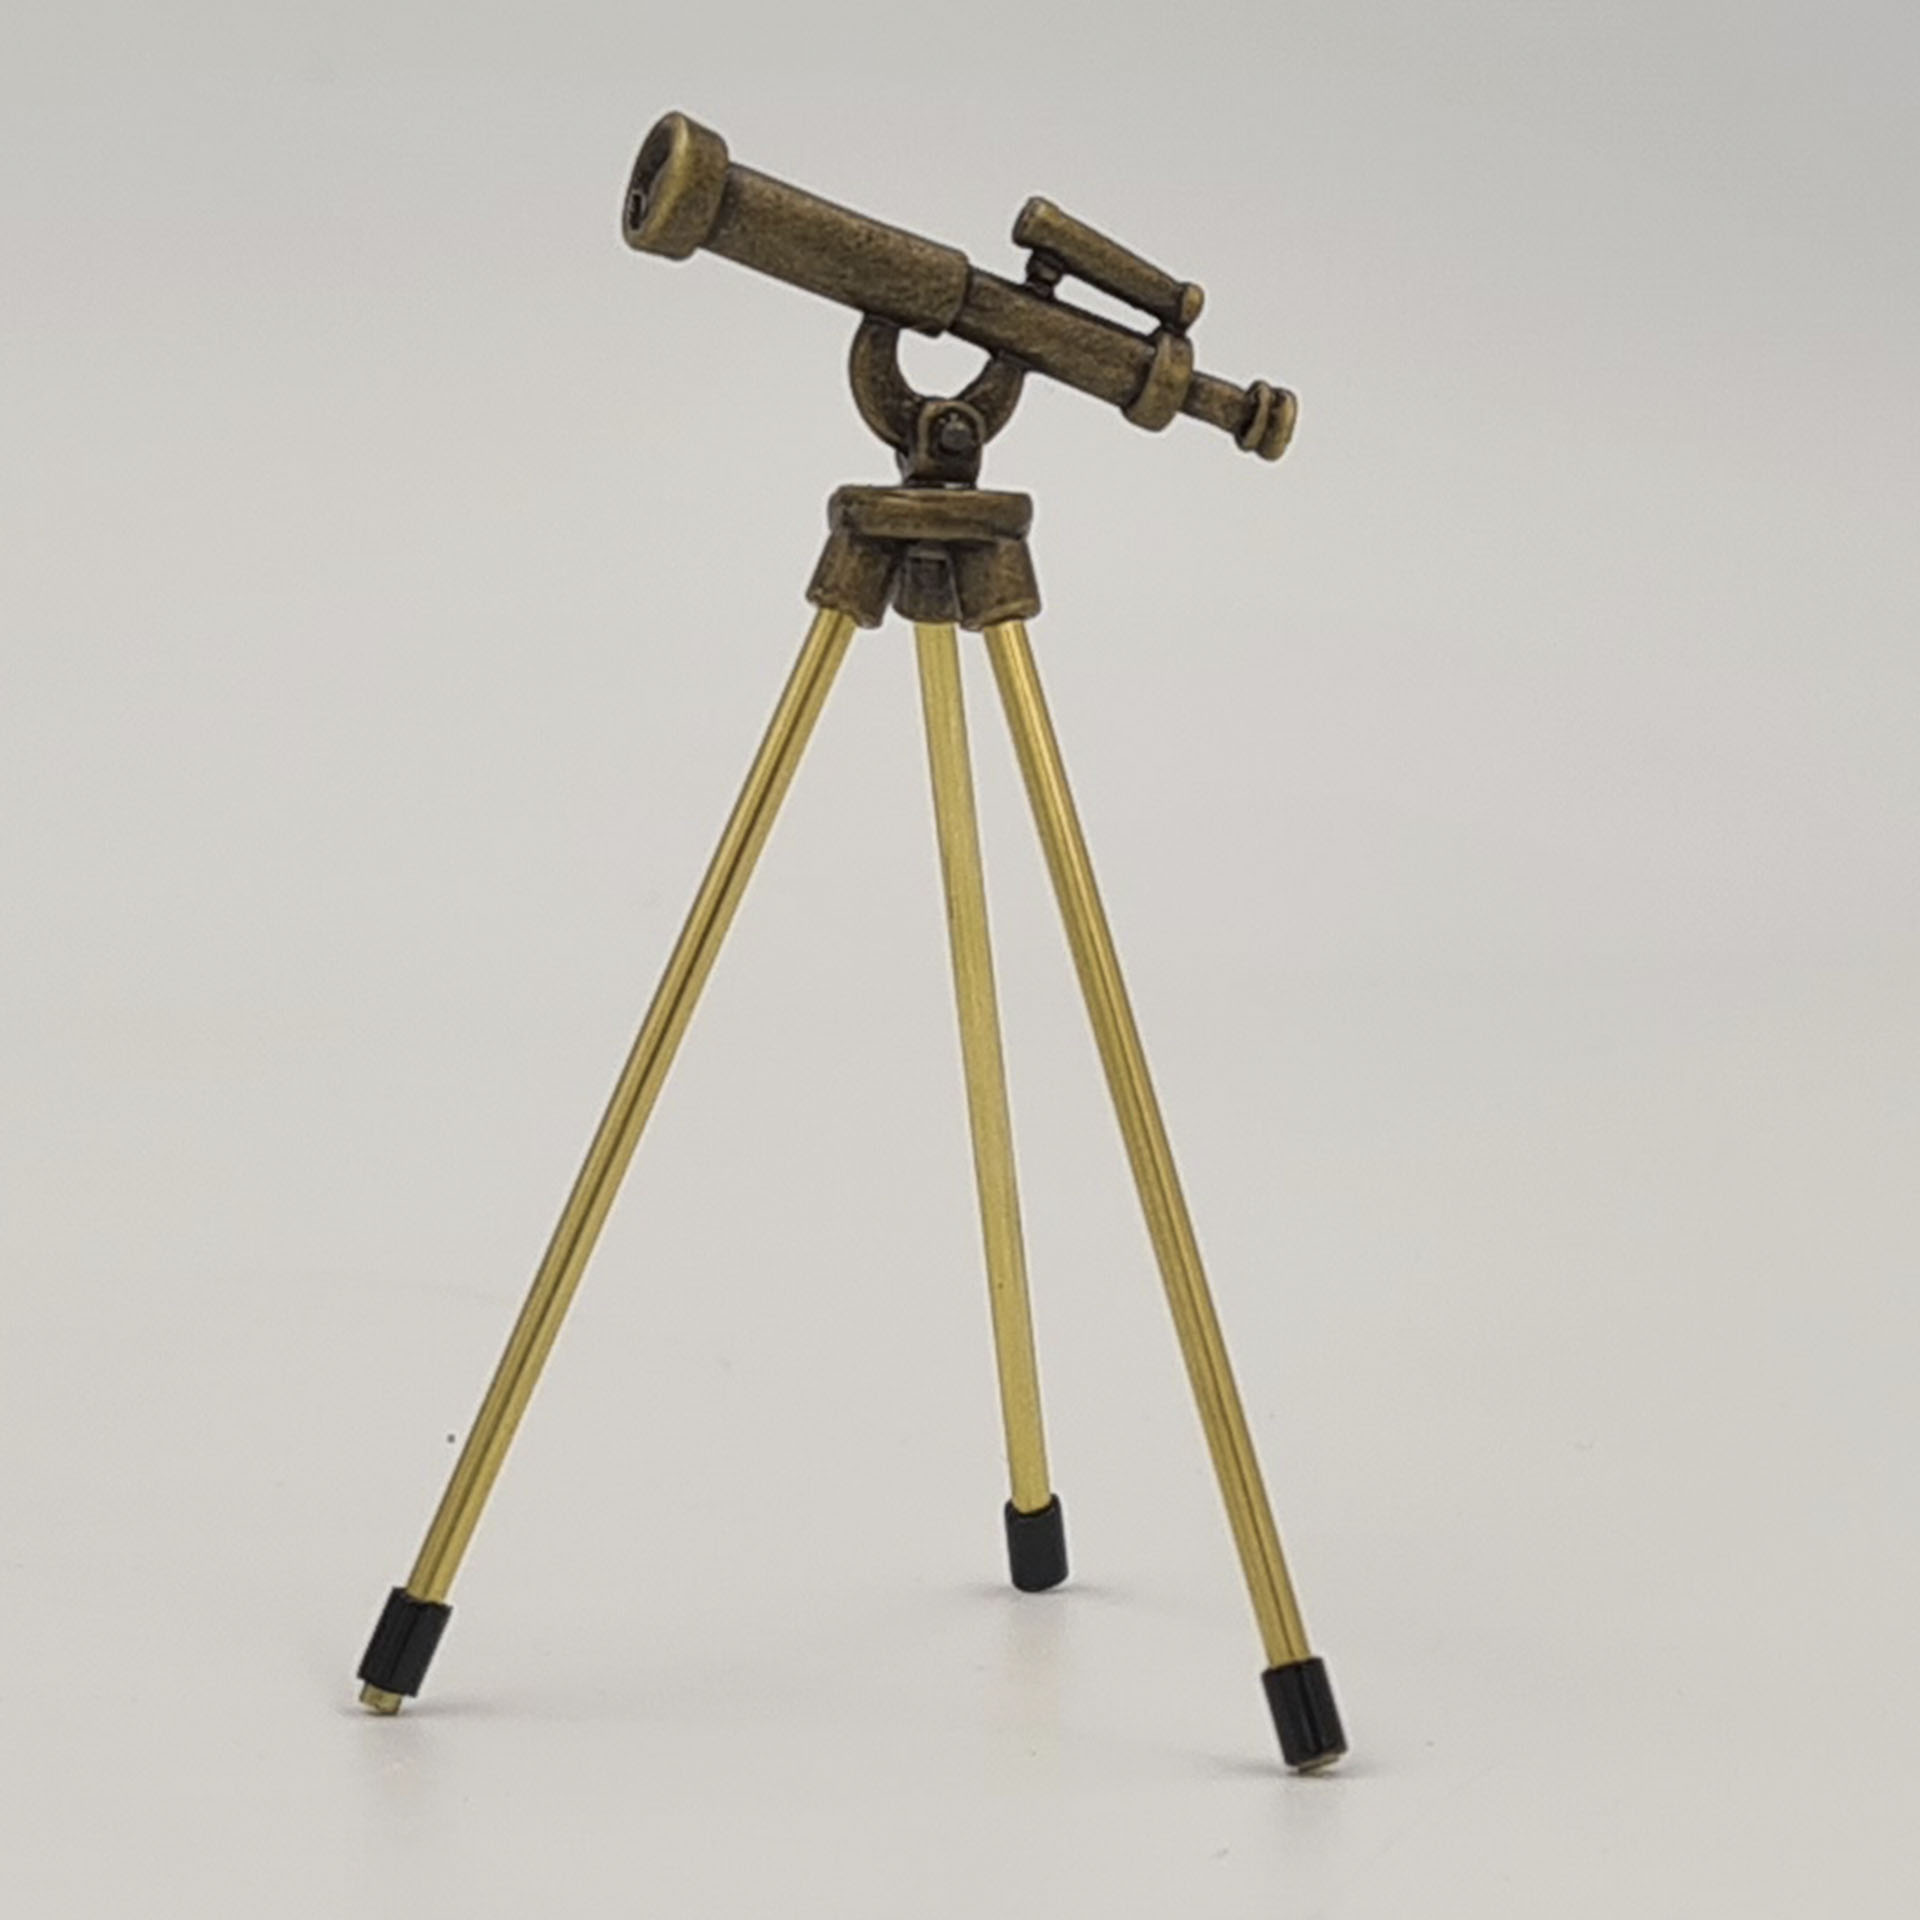 Teleskop auf drei Beinen für den Wichtel als Himmelsentdecker